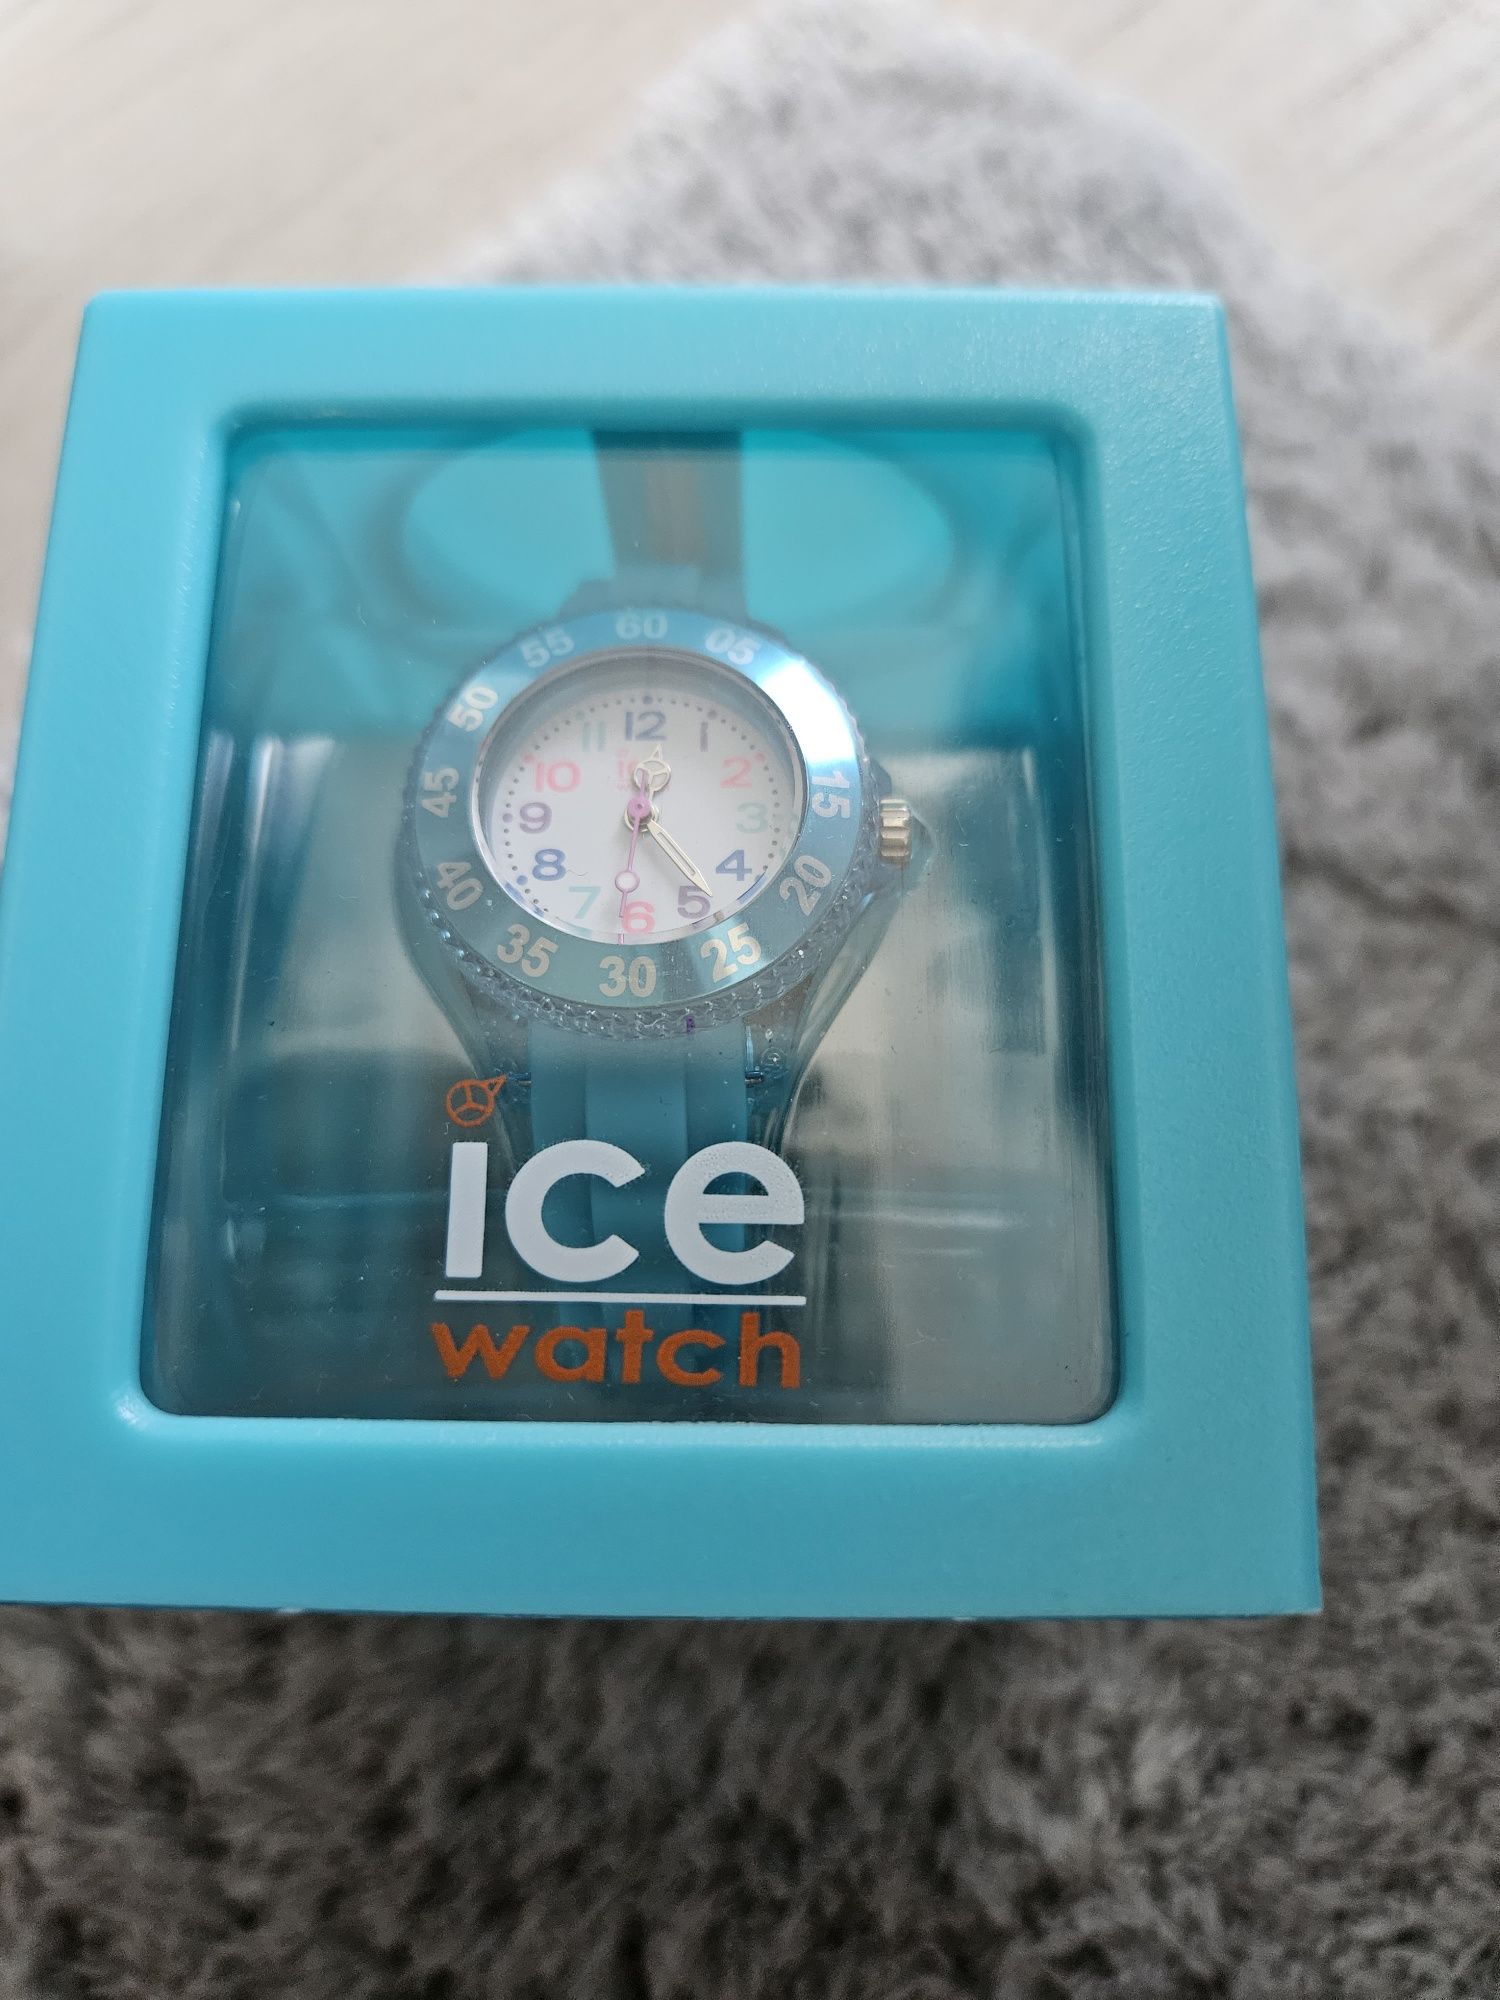 Ice Watch Ice PRINCESS 016415 - zegarek dla dziewczynki